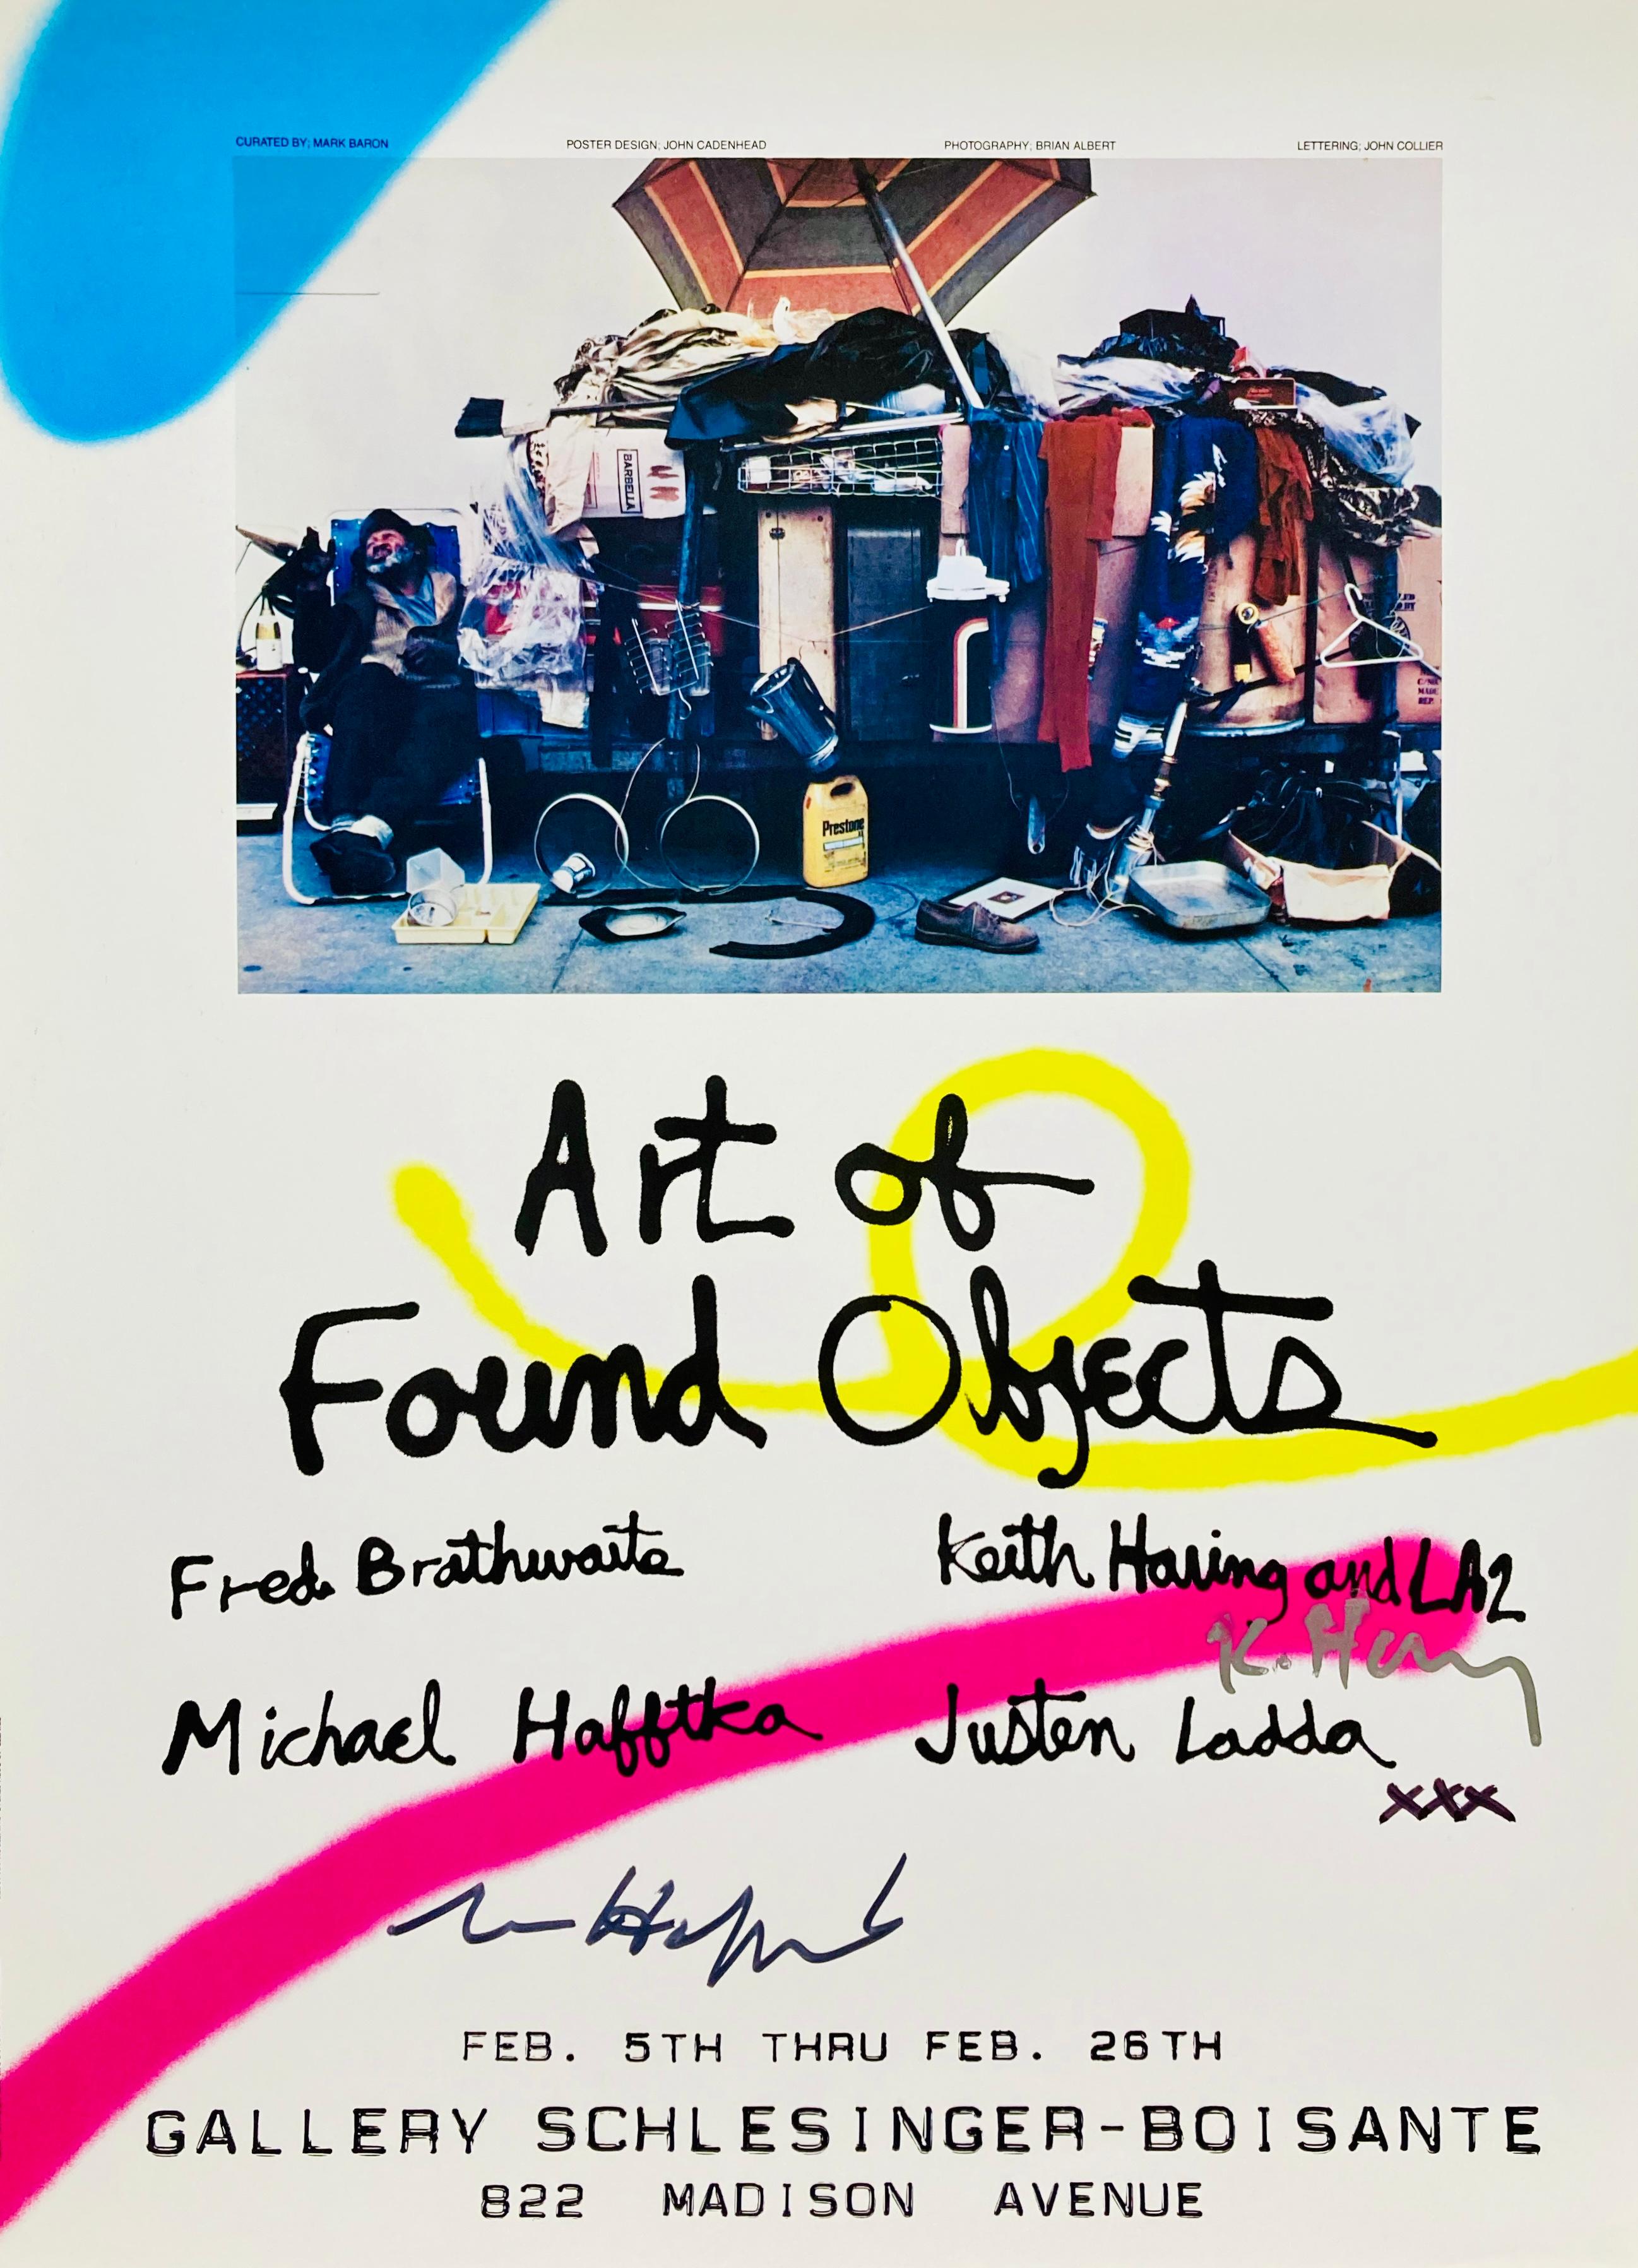 Affiche d'exposition signée Keith Haring 1983 :
Affiche d'exposition signée à la main de Keith Haring, datant du début des années 1980, publiée à l'occasion de : 'Art of Found Objects', Gallery Schlesinger-Boisante, New York, 5 février - 26 février,